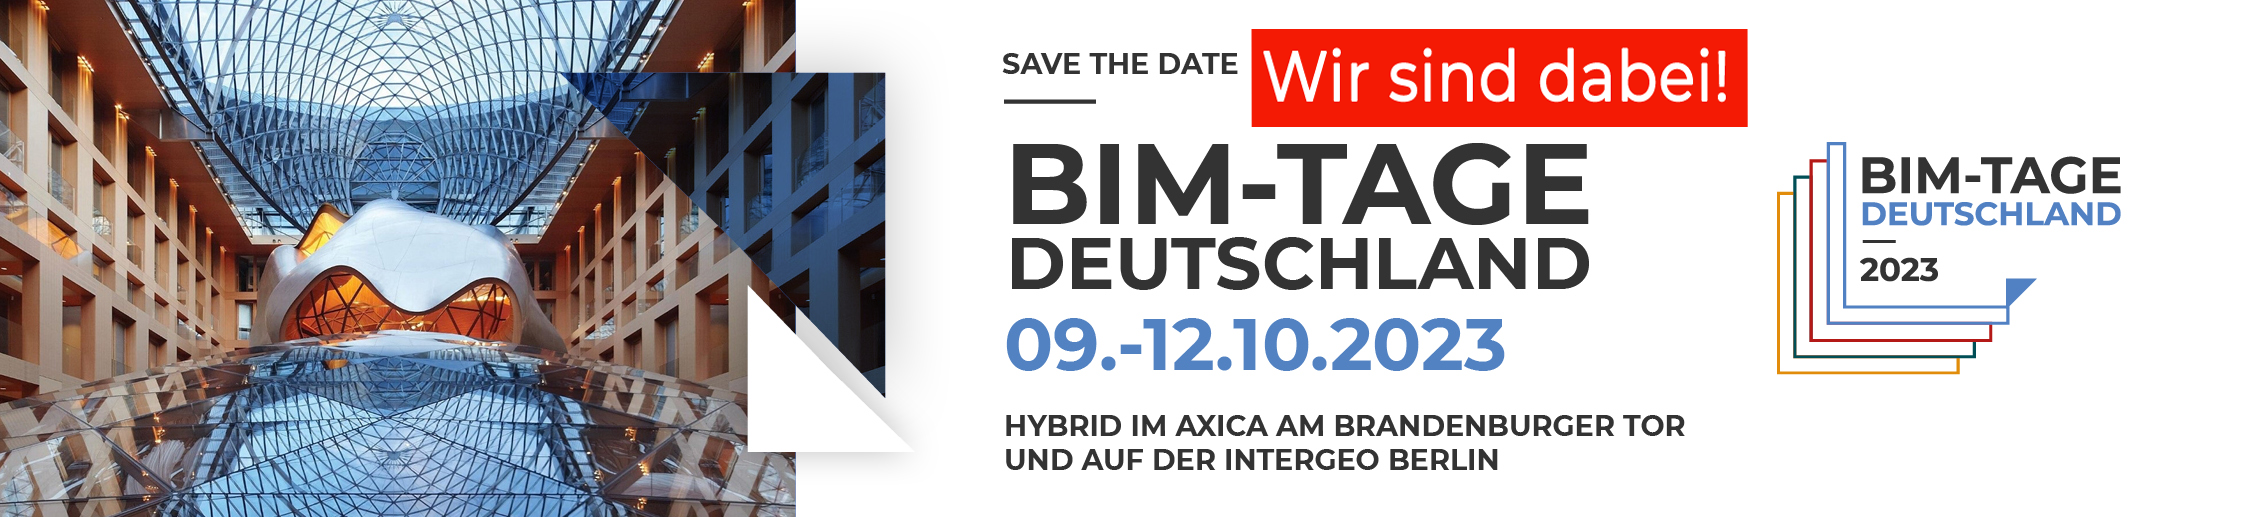 Banner BIM-Tage Deutschland 2023: links Foto der Location Axica in Berlin, mittig "Save The Date" mit Termininfos, rechts Logo der BIM-Tage Deutschland